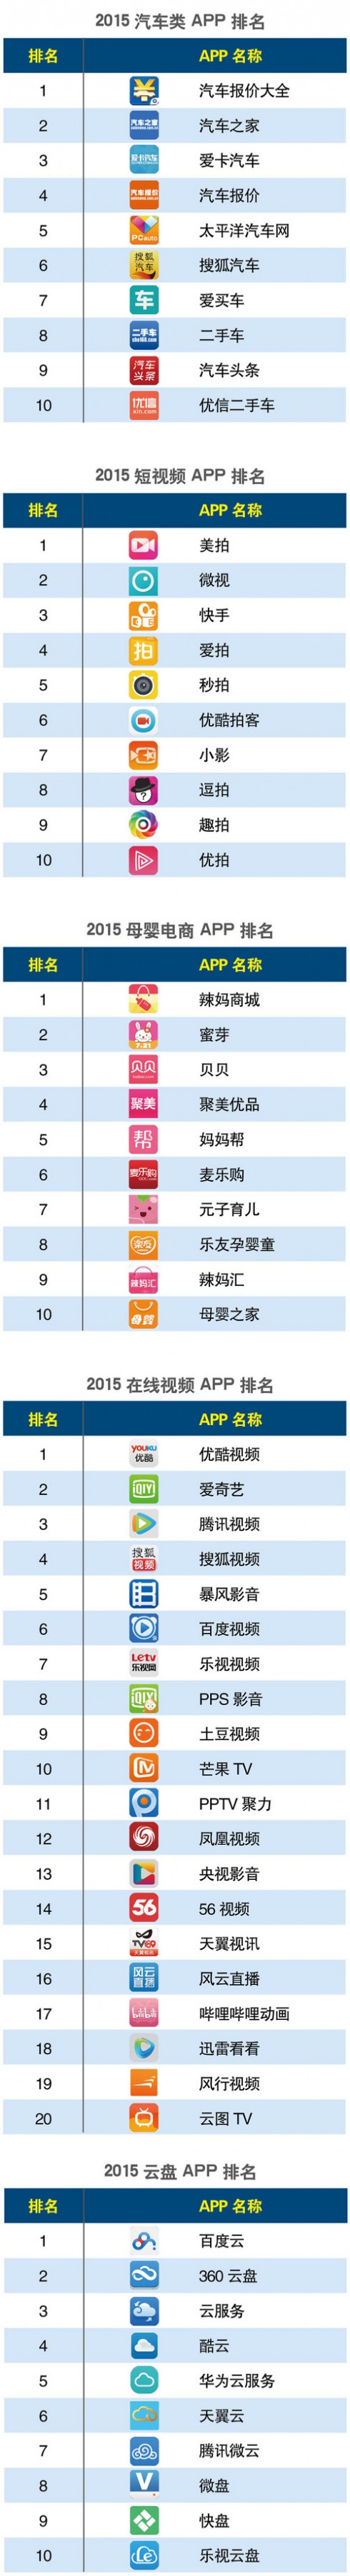 2015中国APP分类排行 APP排名 手机浏览器排名 新闻资讯排名 音乐APP排名